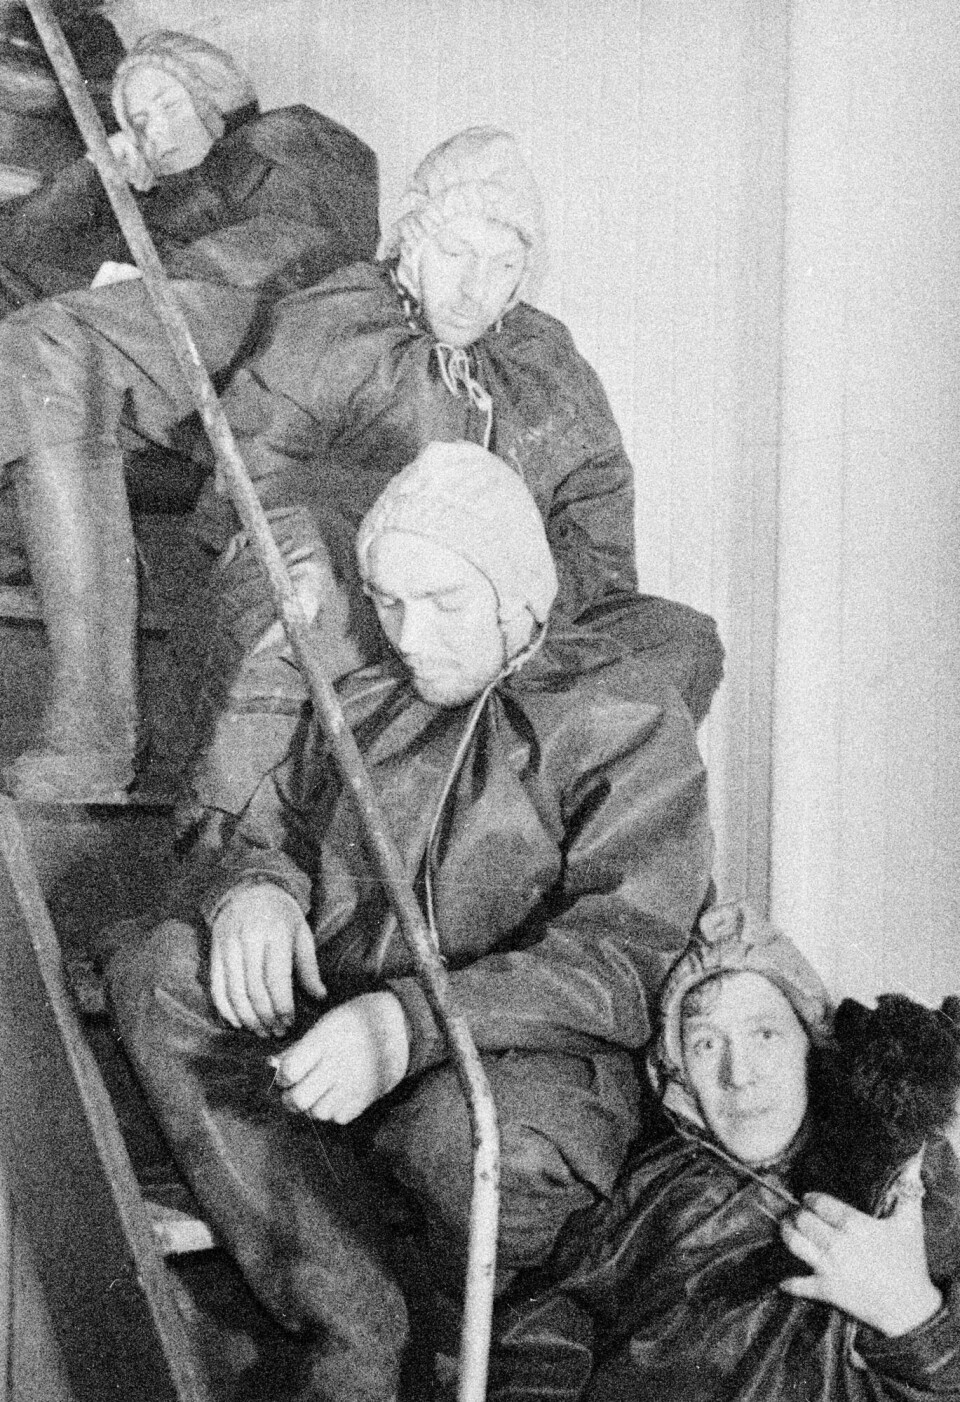 Krigsseilerne visste lite om hva som skjedde med familiene deres i Norge og vice versa. Flere familier fikk beskjed om at skip gikk ned og at mannskapet var tapt, mens det senere viste seg at de var reddet eller kommet i fangenskap. Bildet er tatt under et ubåt-angrep. Sjøfolkene hviler, men er klare til å hoppe i sjøen på kort varsel.